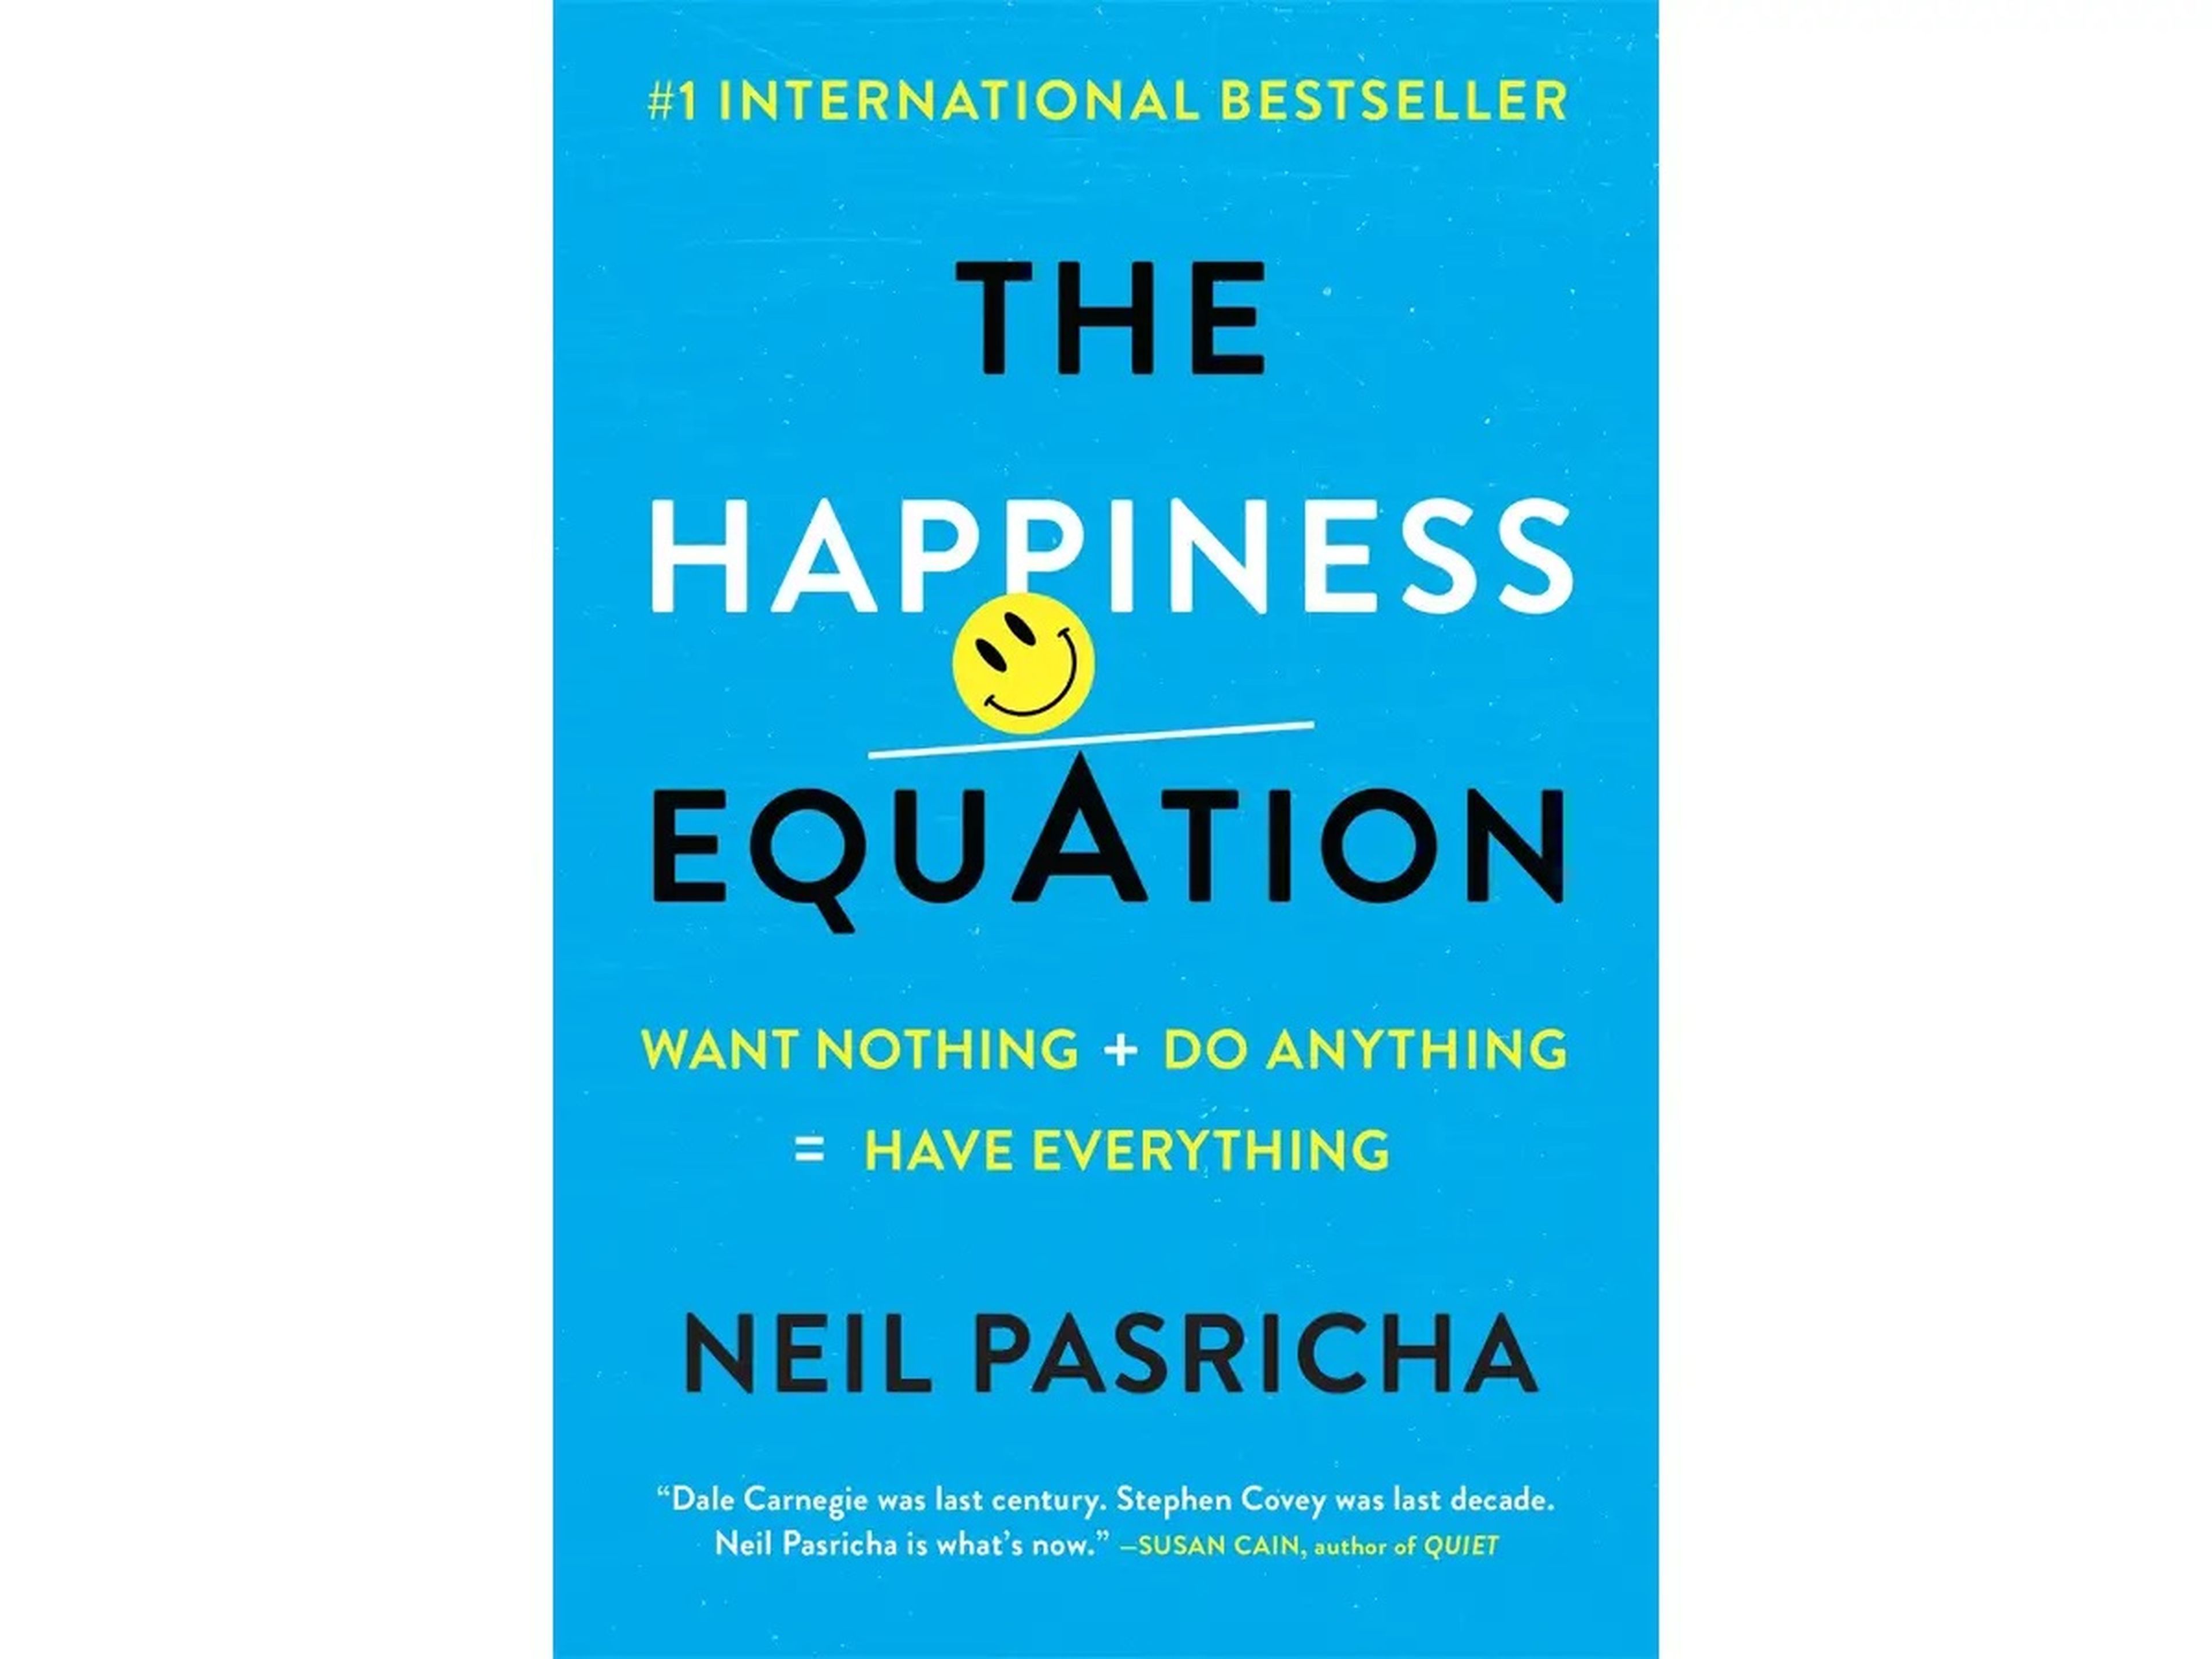 La ecuación de la felicidad, de Neil Pasricha.